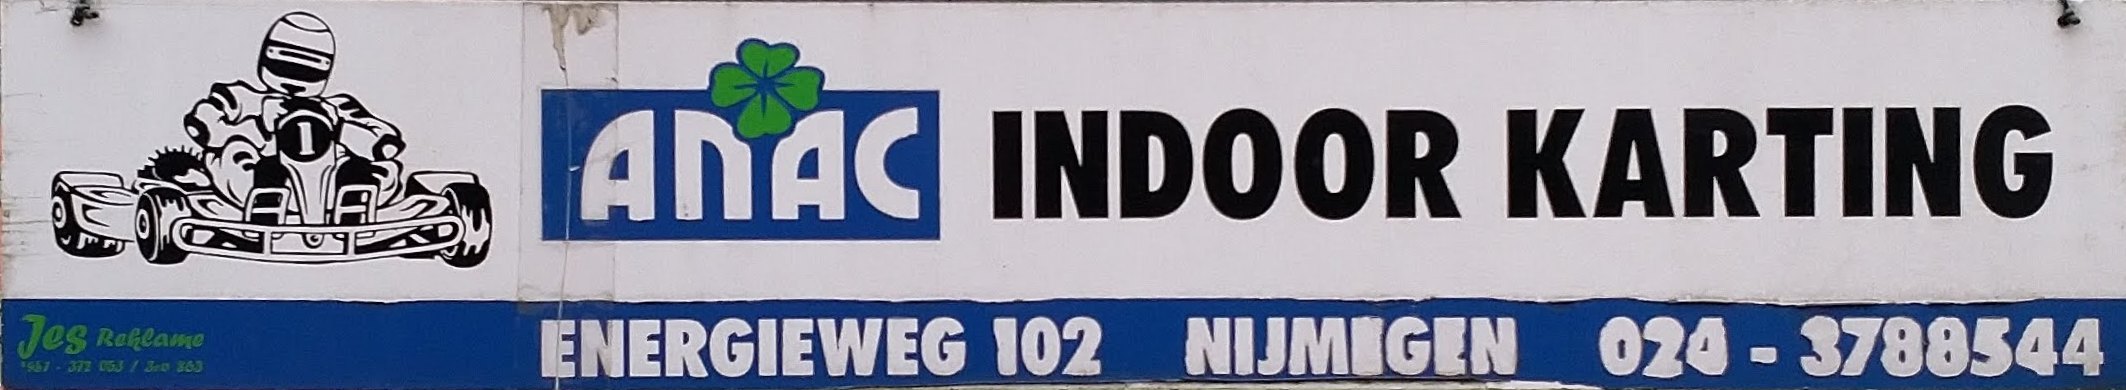 Anac Indoor Karting logo